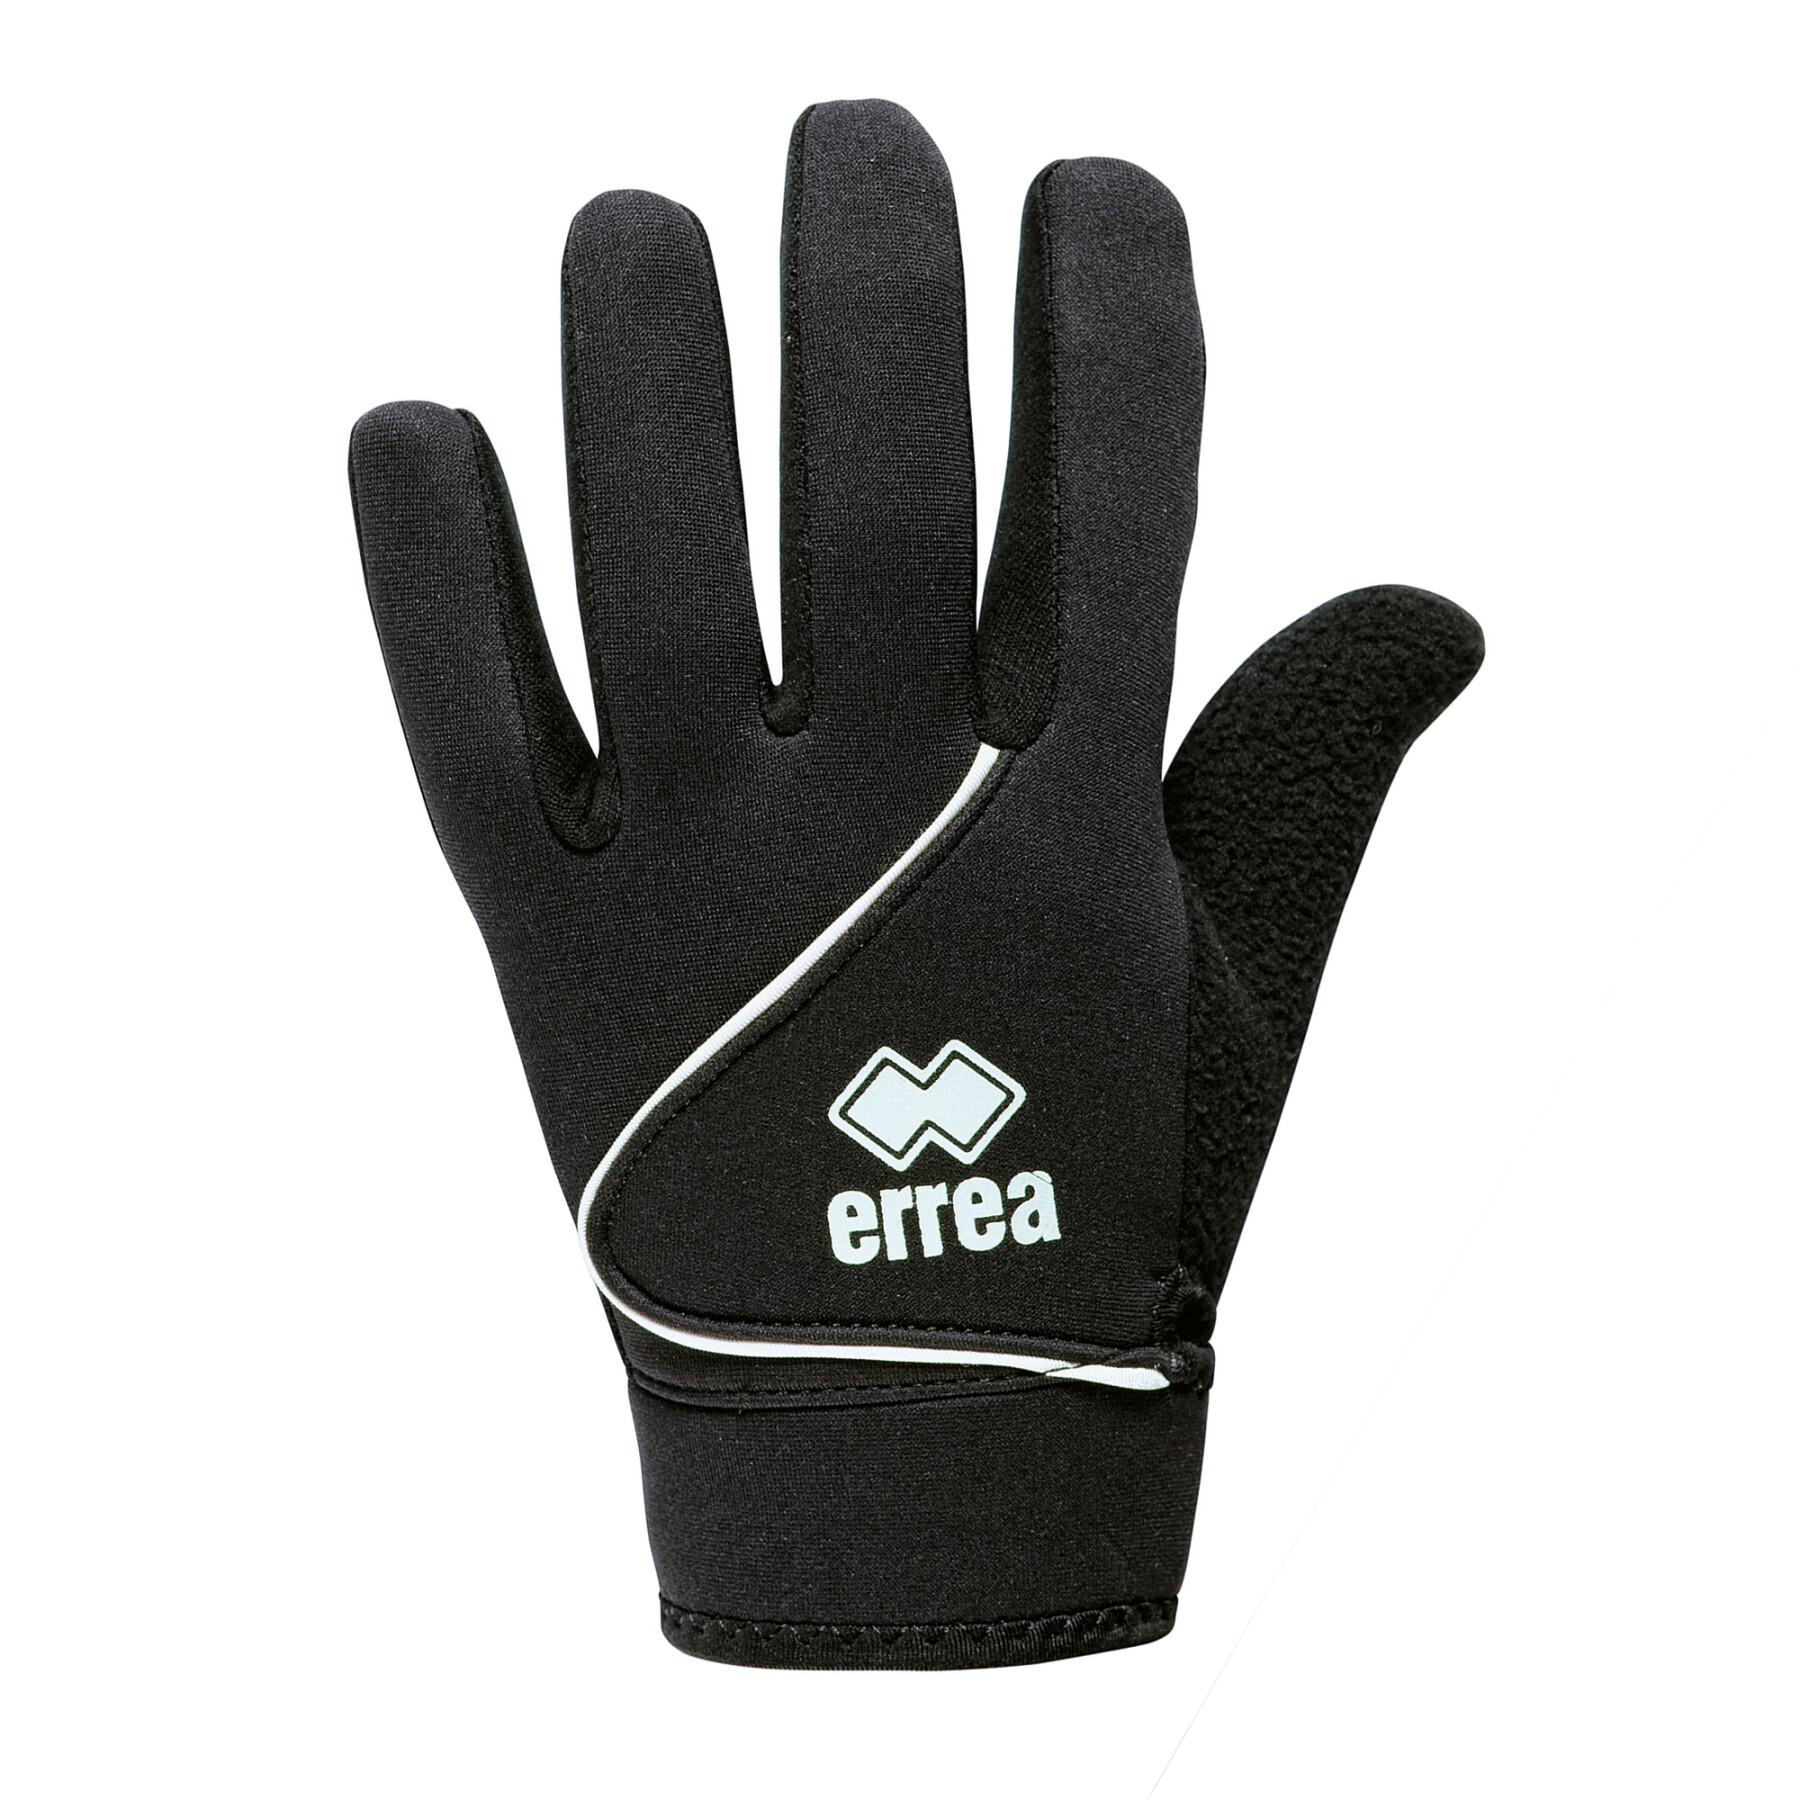 Handschuhe Errea Teel Tech